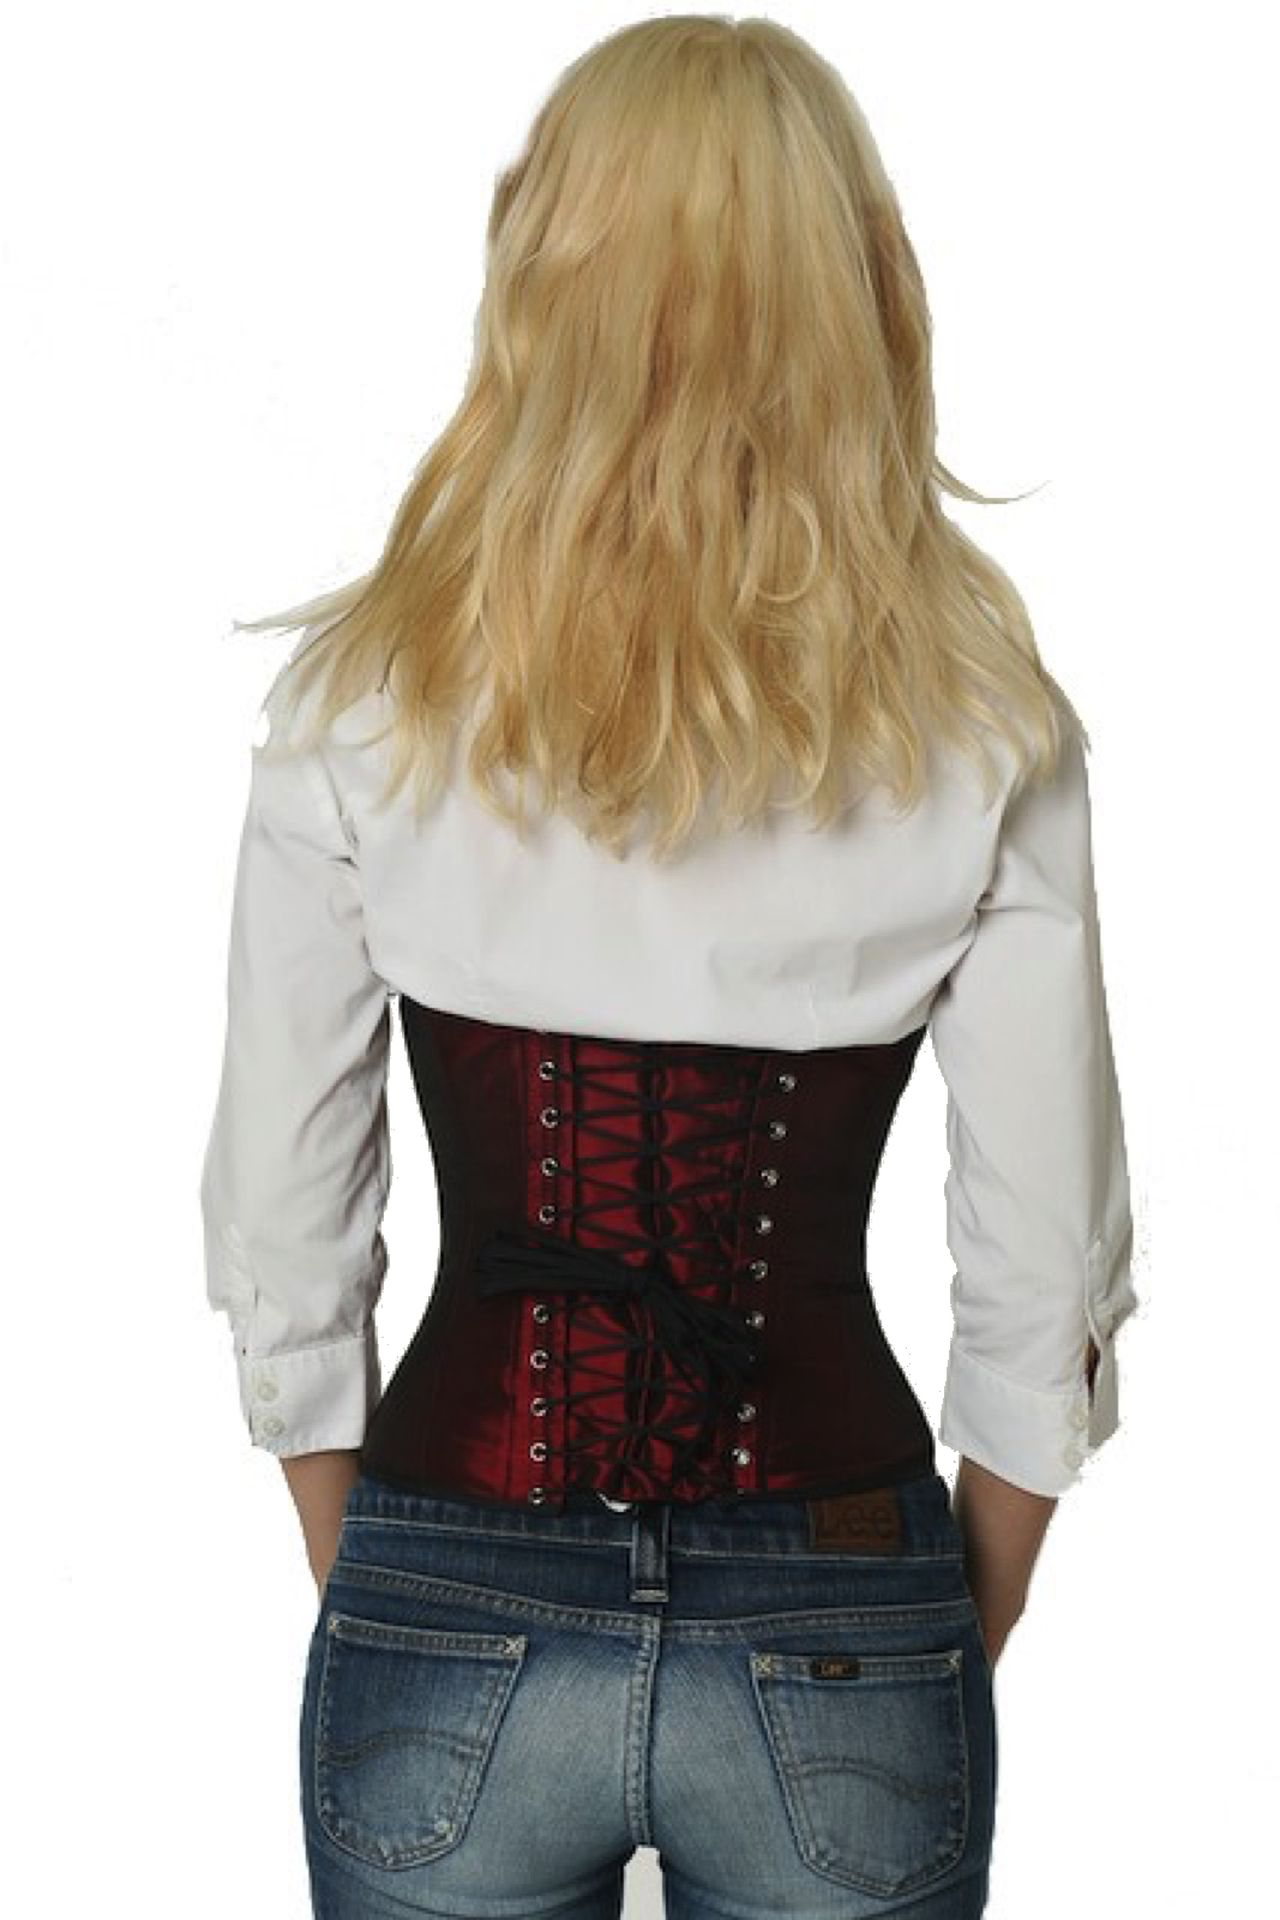 Satijn corset bordeaux rood taille Korset sw05